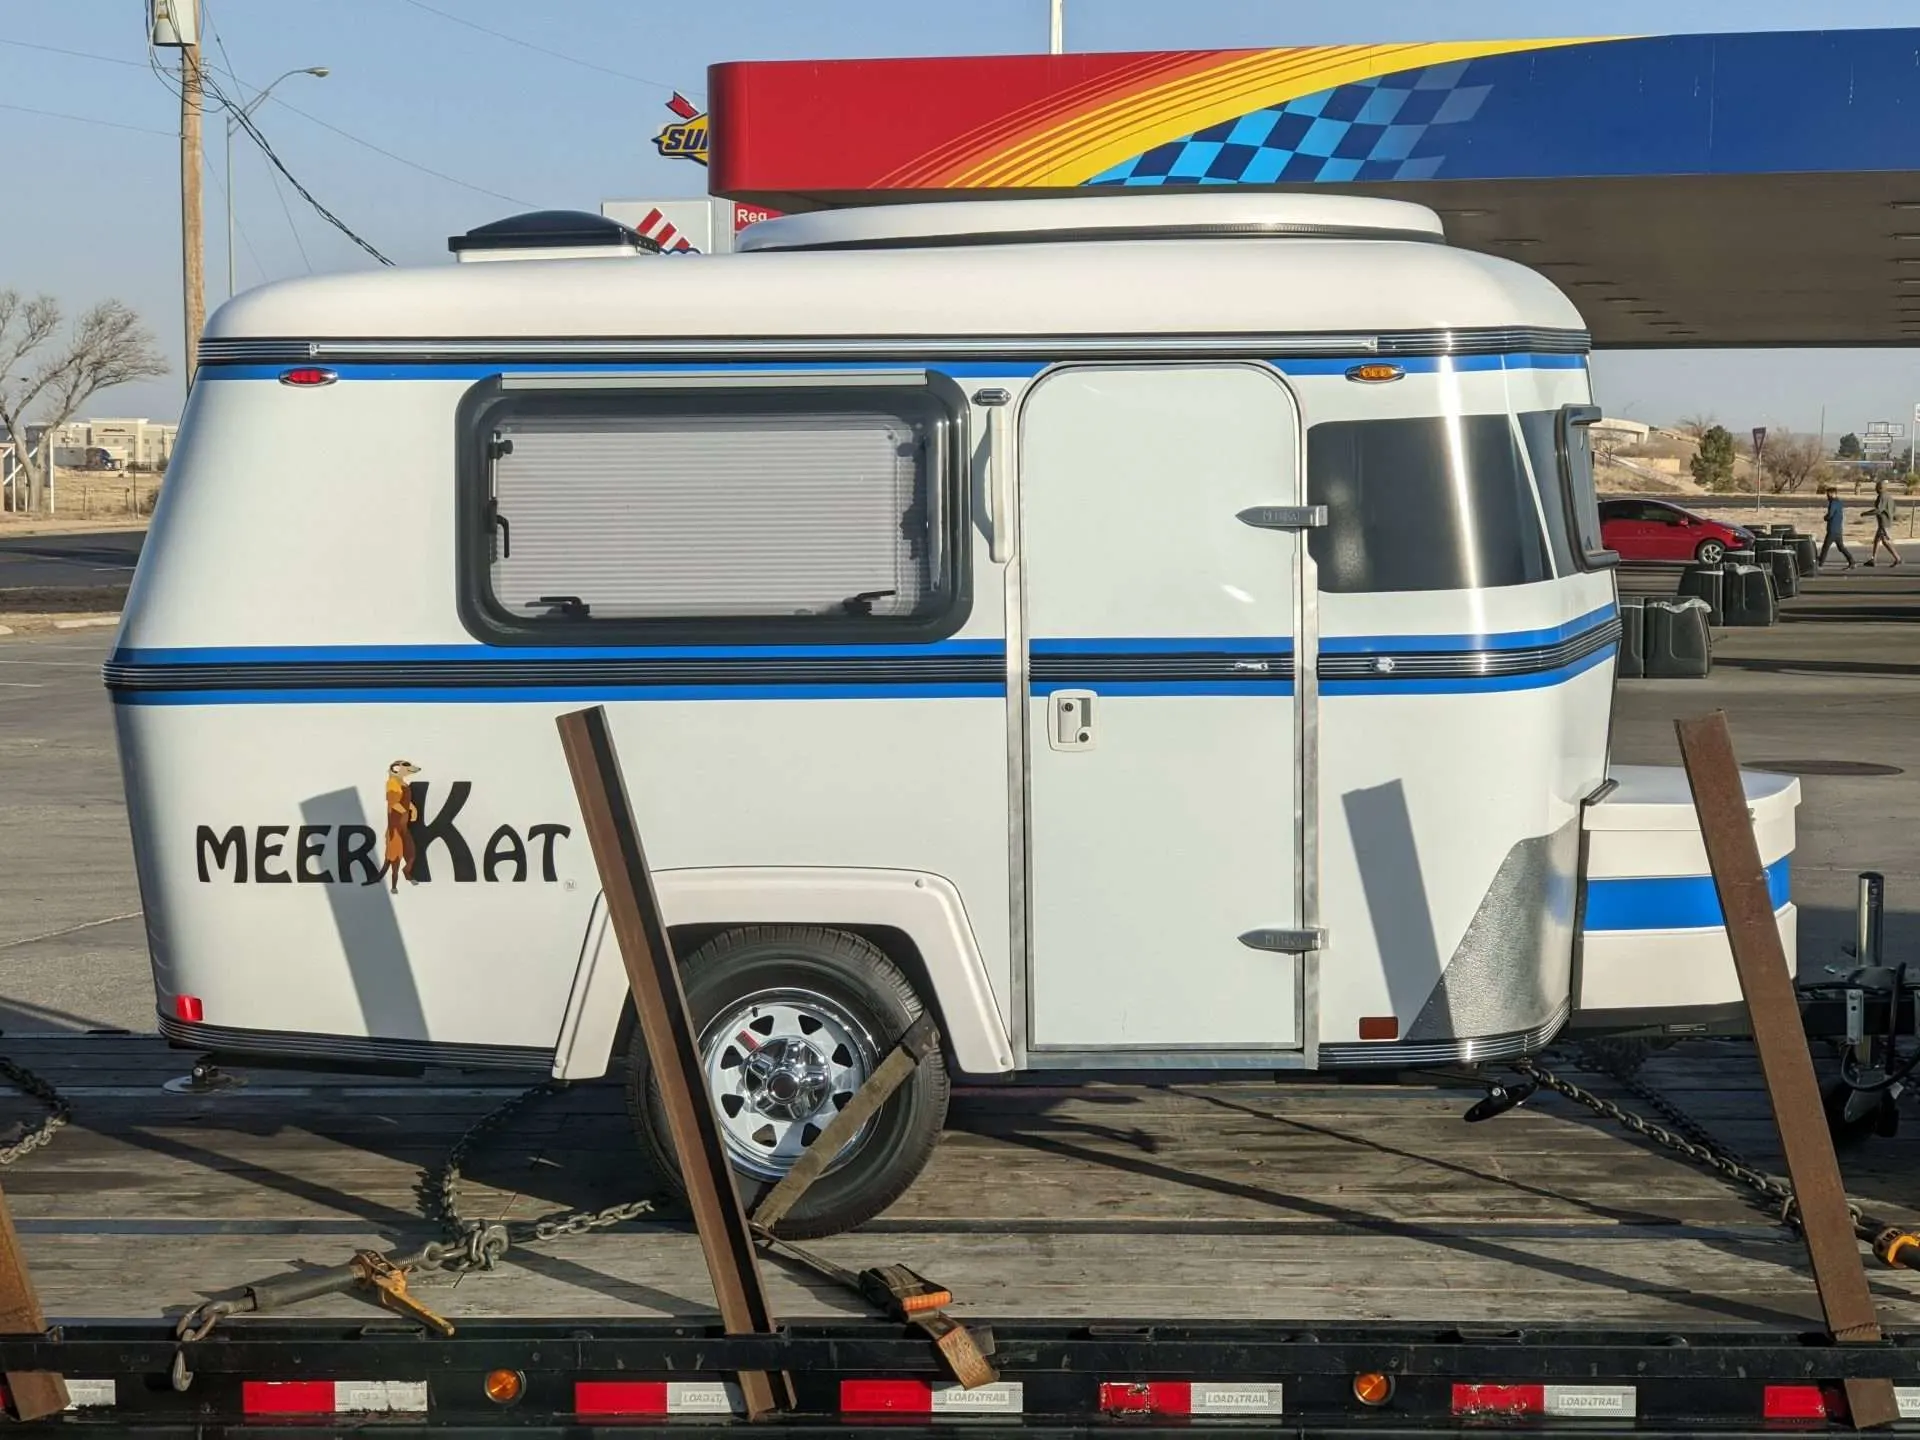 Meerkat camper trailer parked at gas station